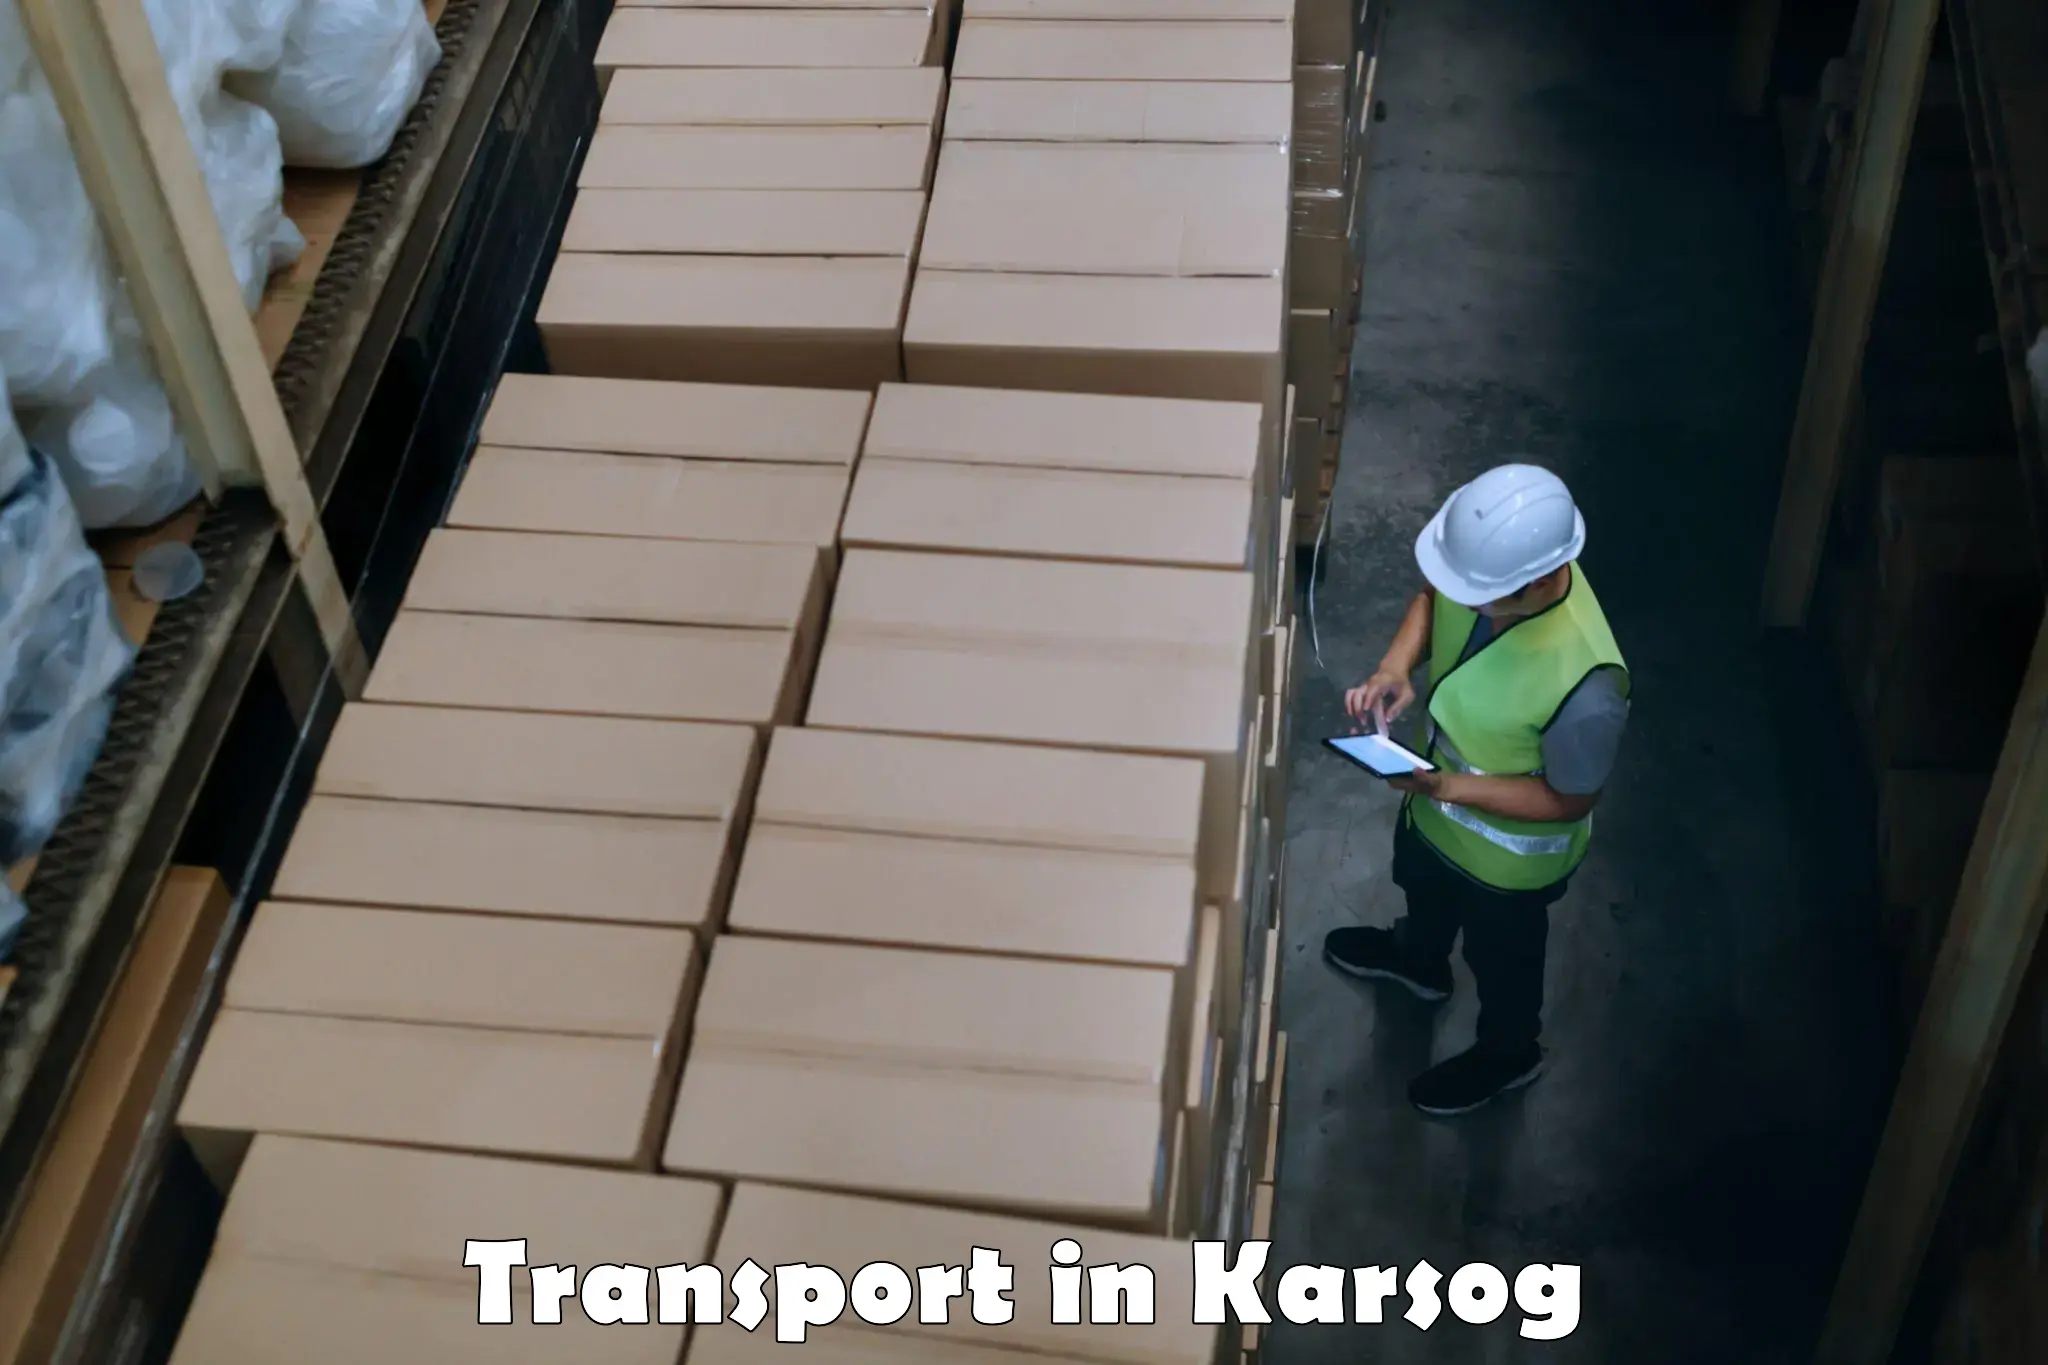 Cargo transport services in Karsog